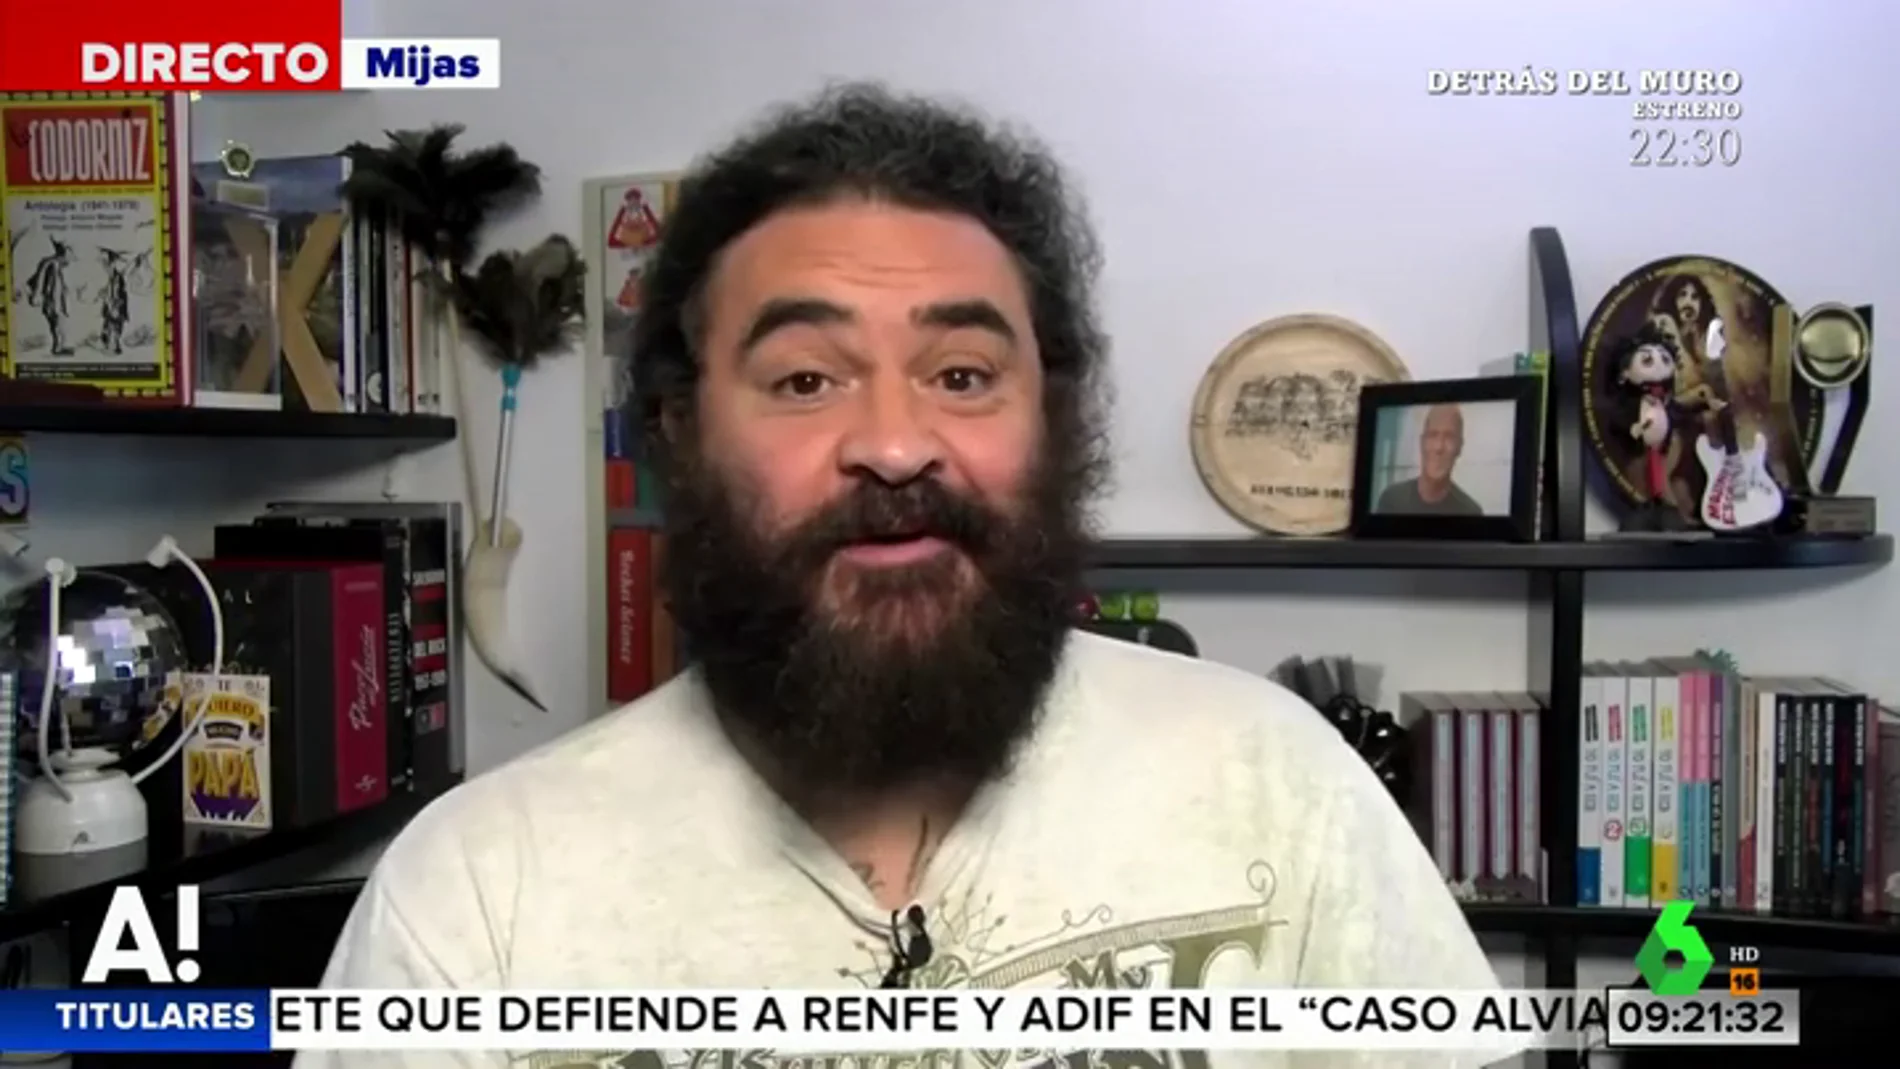 'Echenicada', 'potemos', 'casoplón'... El Sevilla repasa los conceptos utilizados por "la corriente crítica" de Podemos